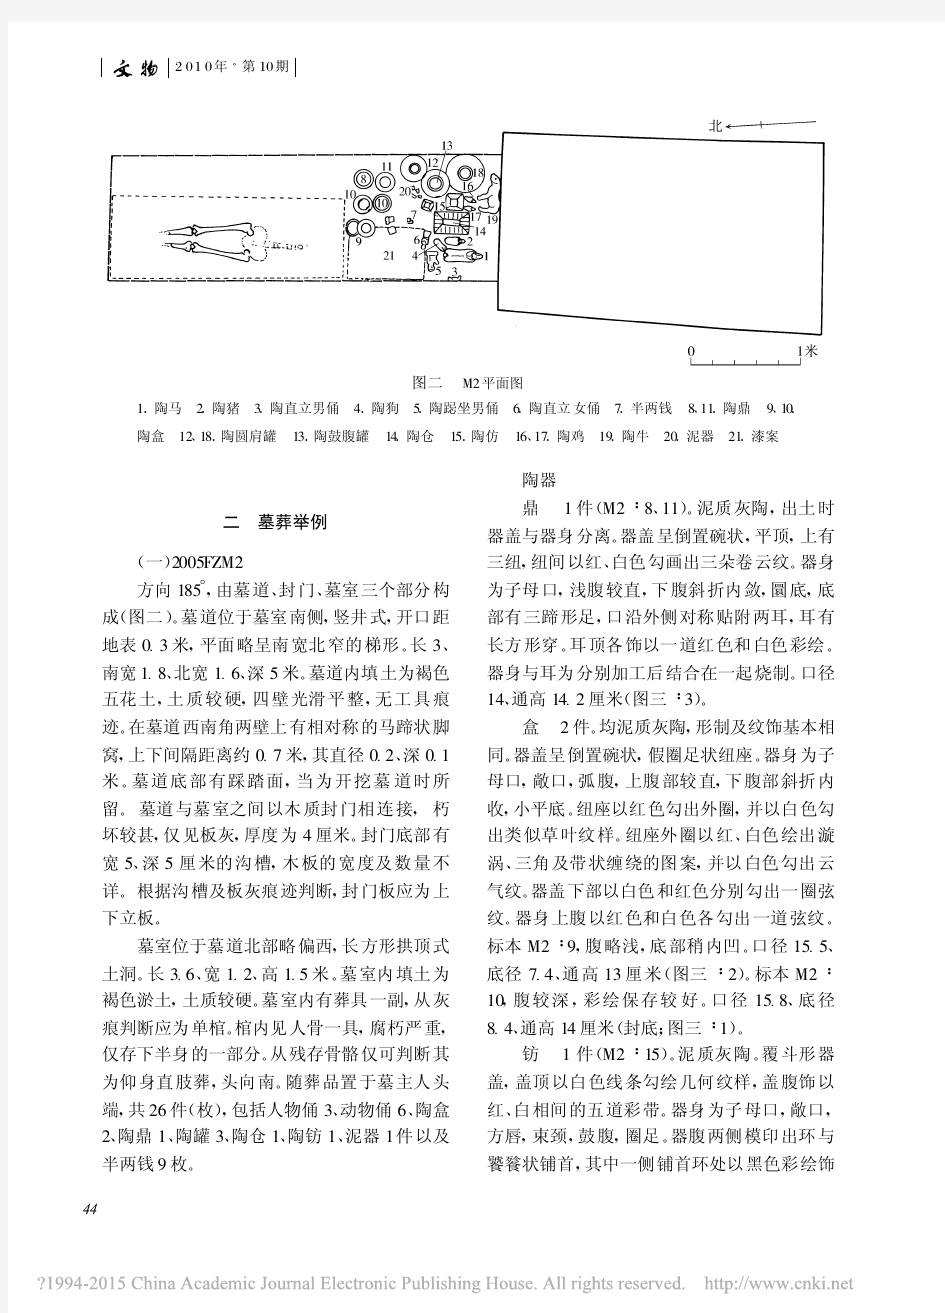 《文物》杂志2010年第10期--陕西扶风纸白西汉墓发掘简报_孙周勇